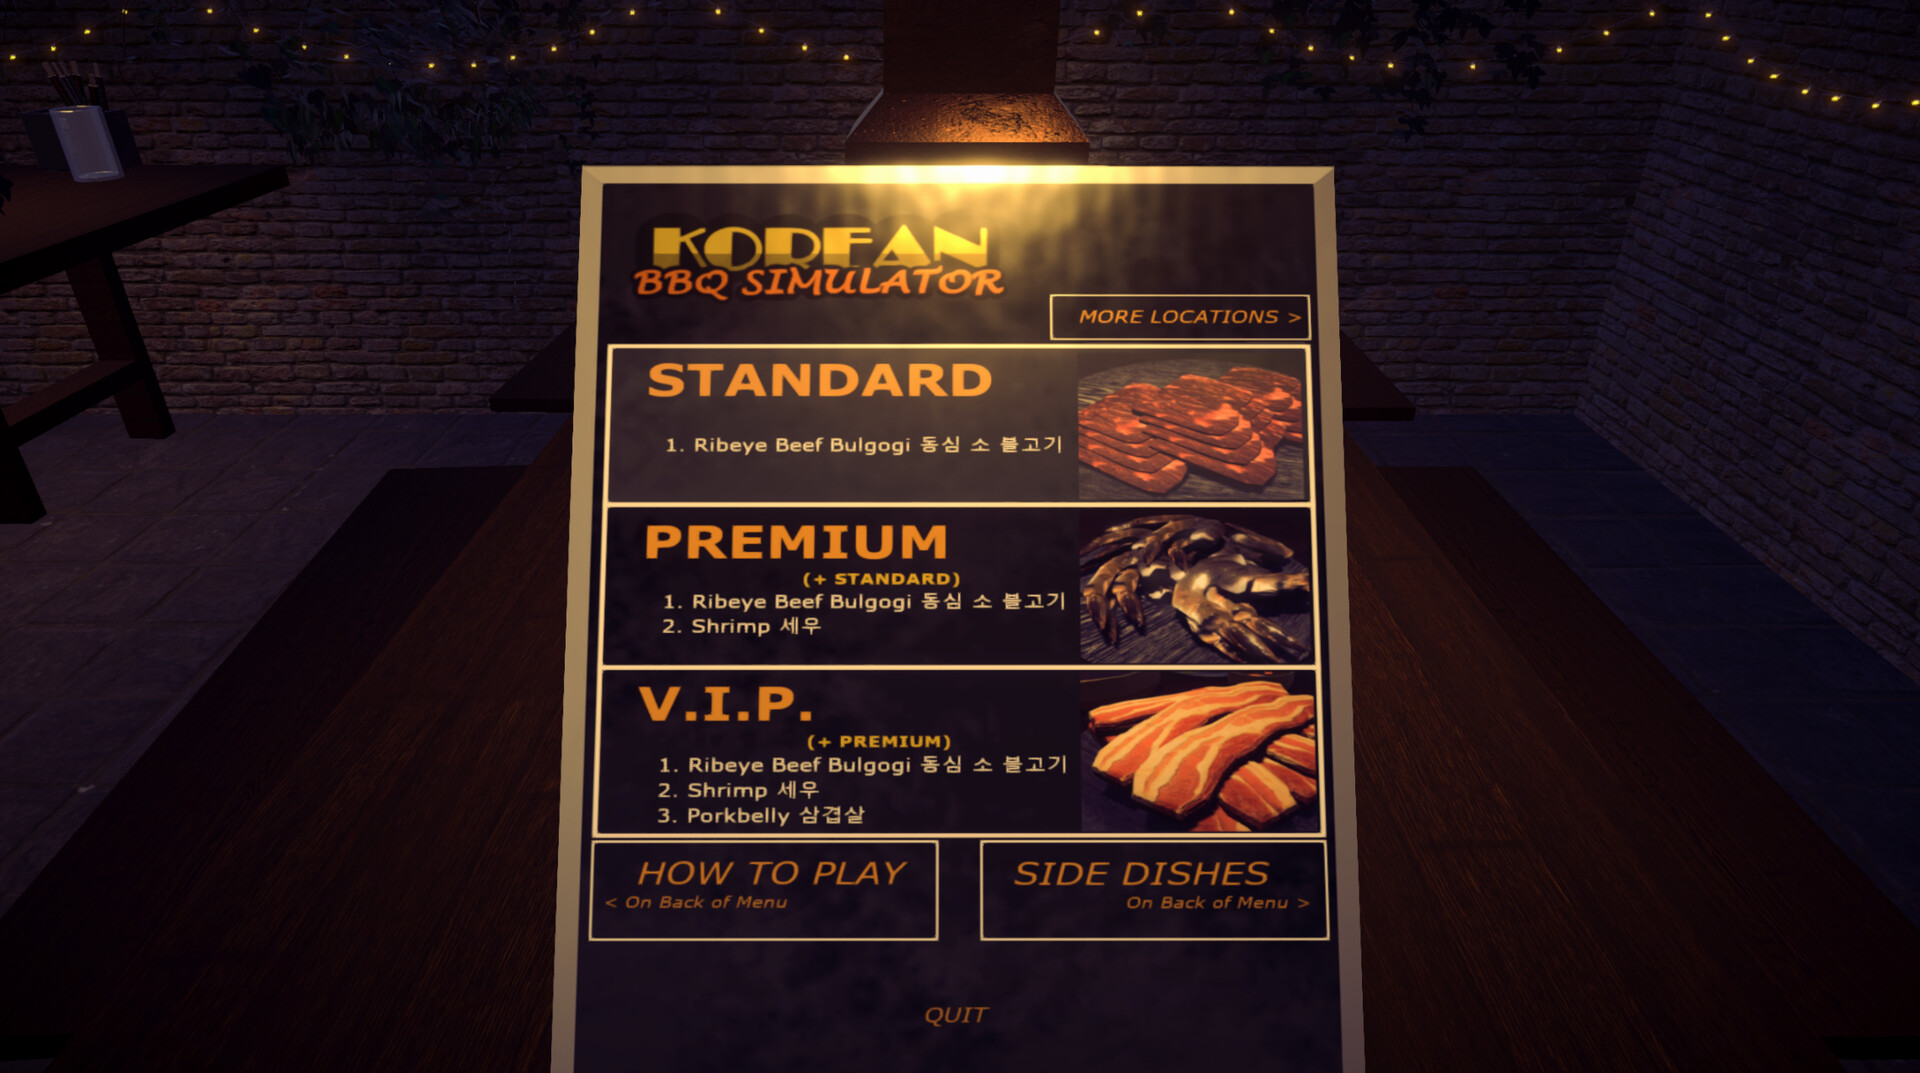 Korean BBQ Simulator Steam CD Key 4.42$